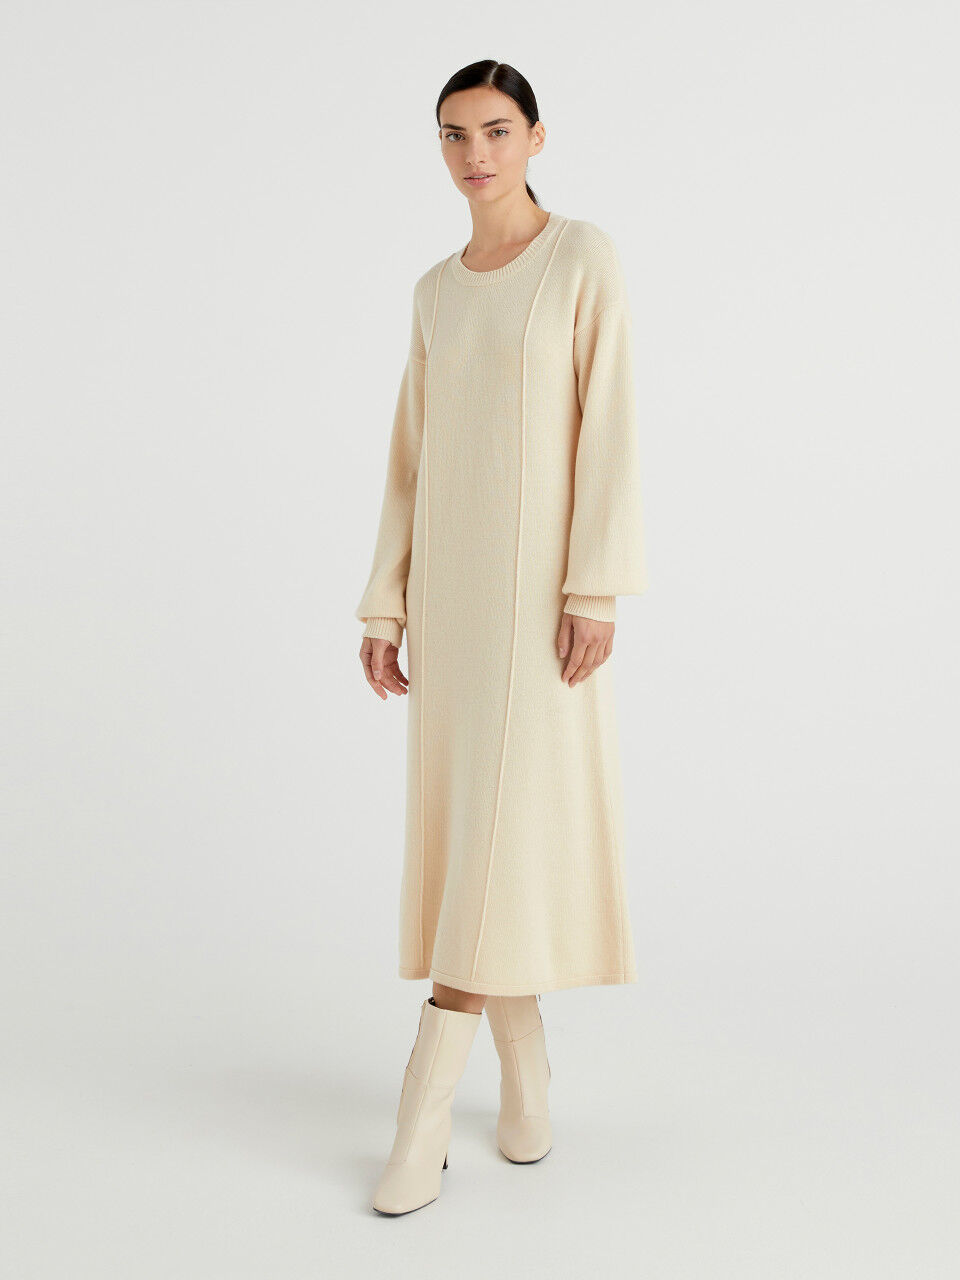 Φόρεμα μιντί από πλεκτό ύφασμα από ανάμεικτο μάλλινο